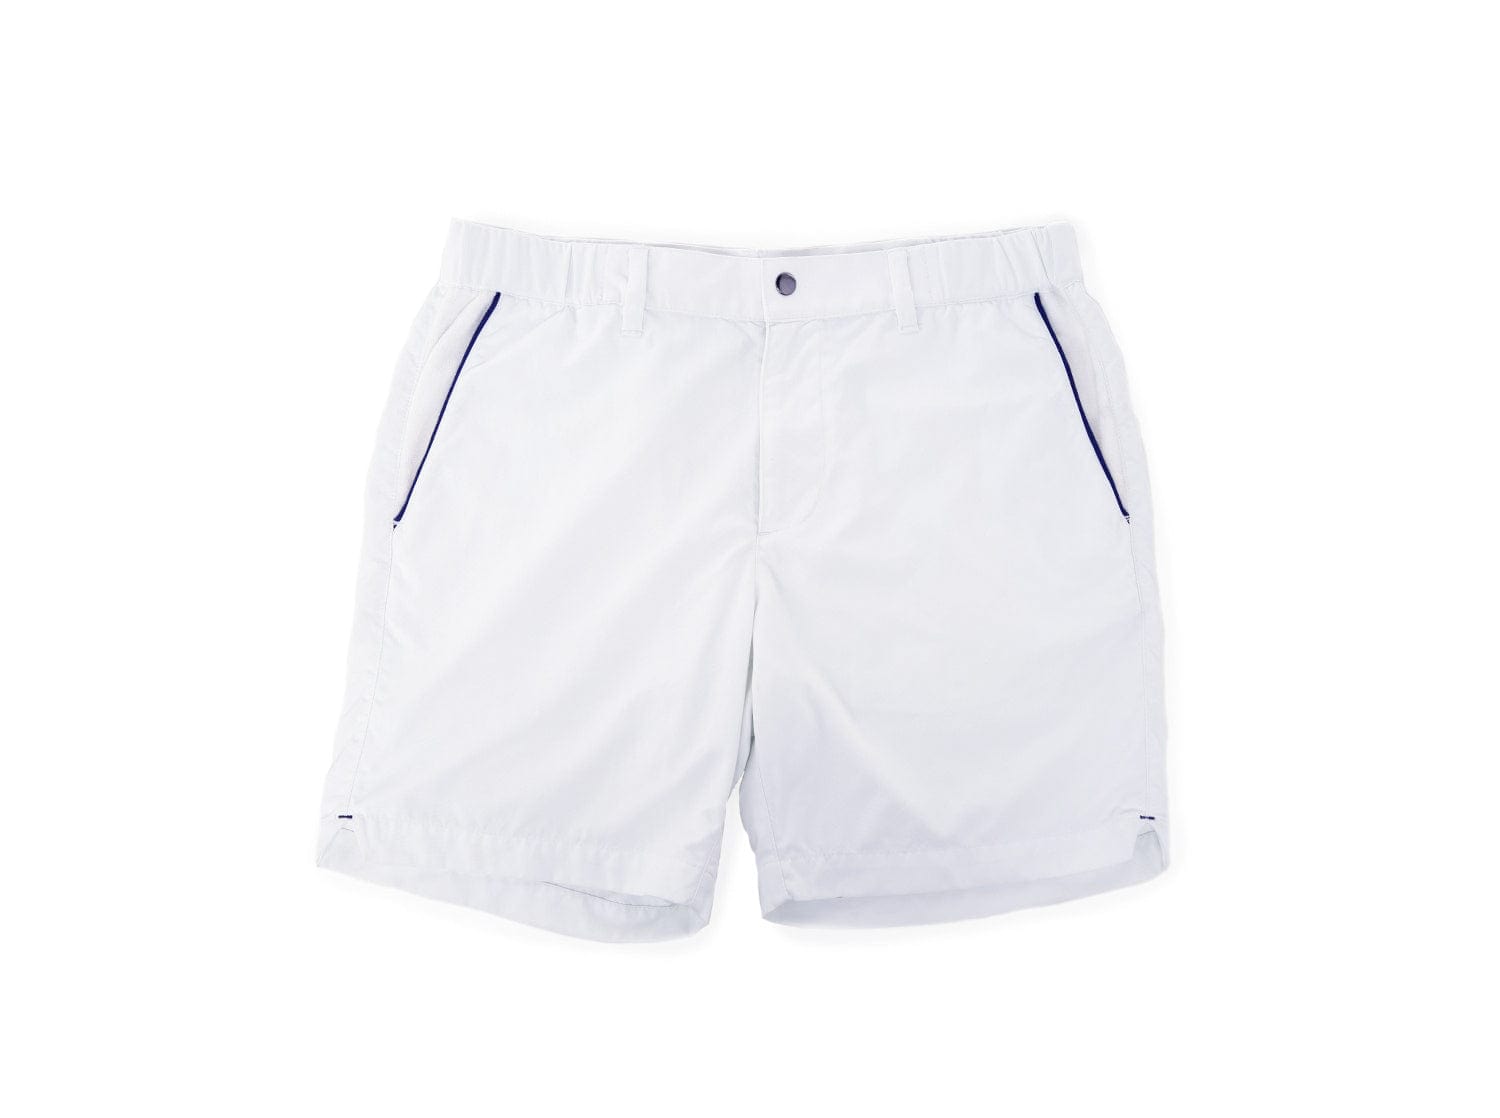 Court Shorts - White